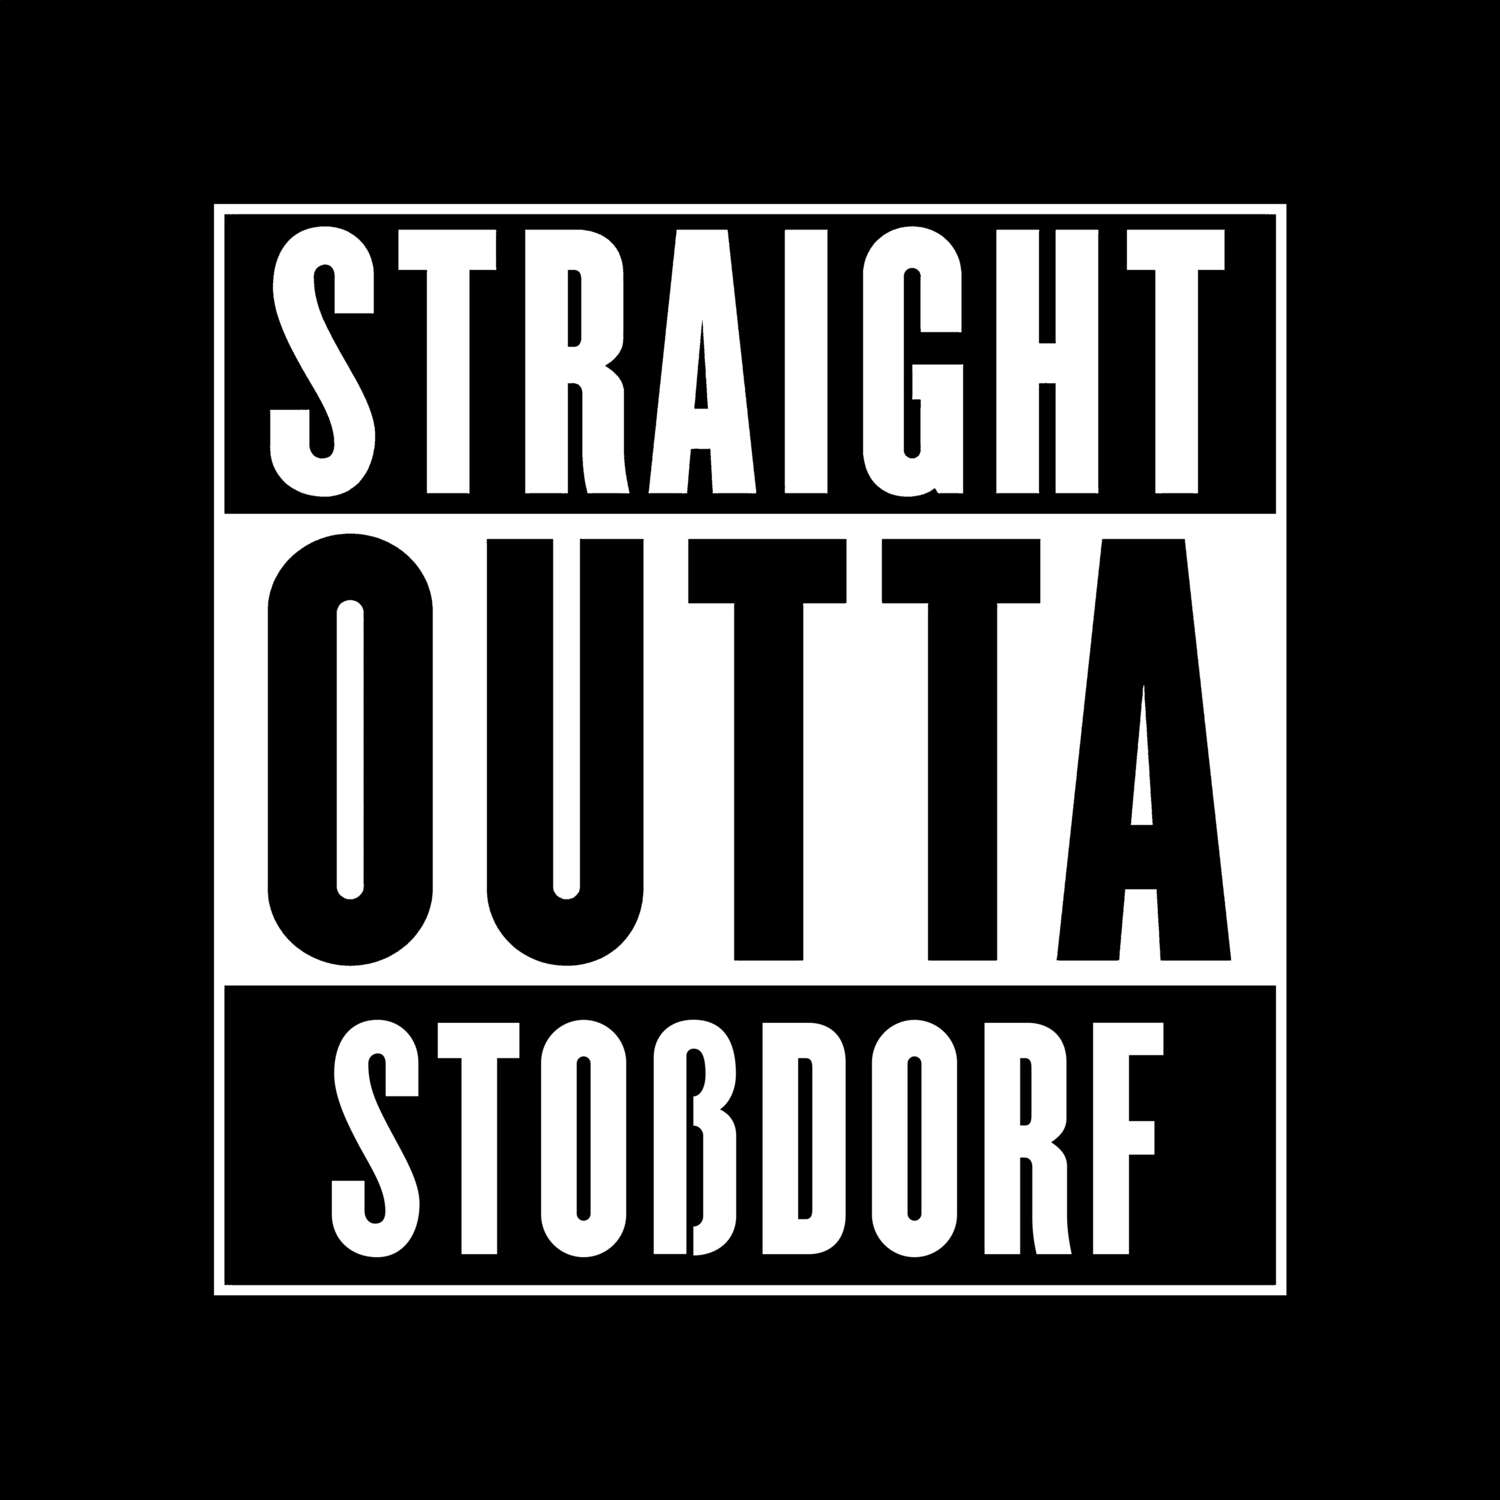 Stoßdorf T-Shirt »Straight Outta«